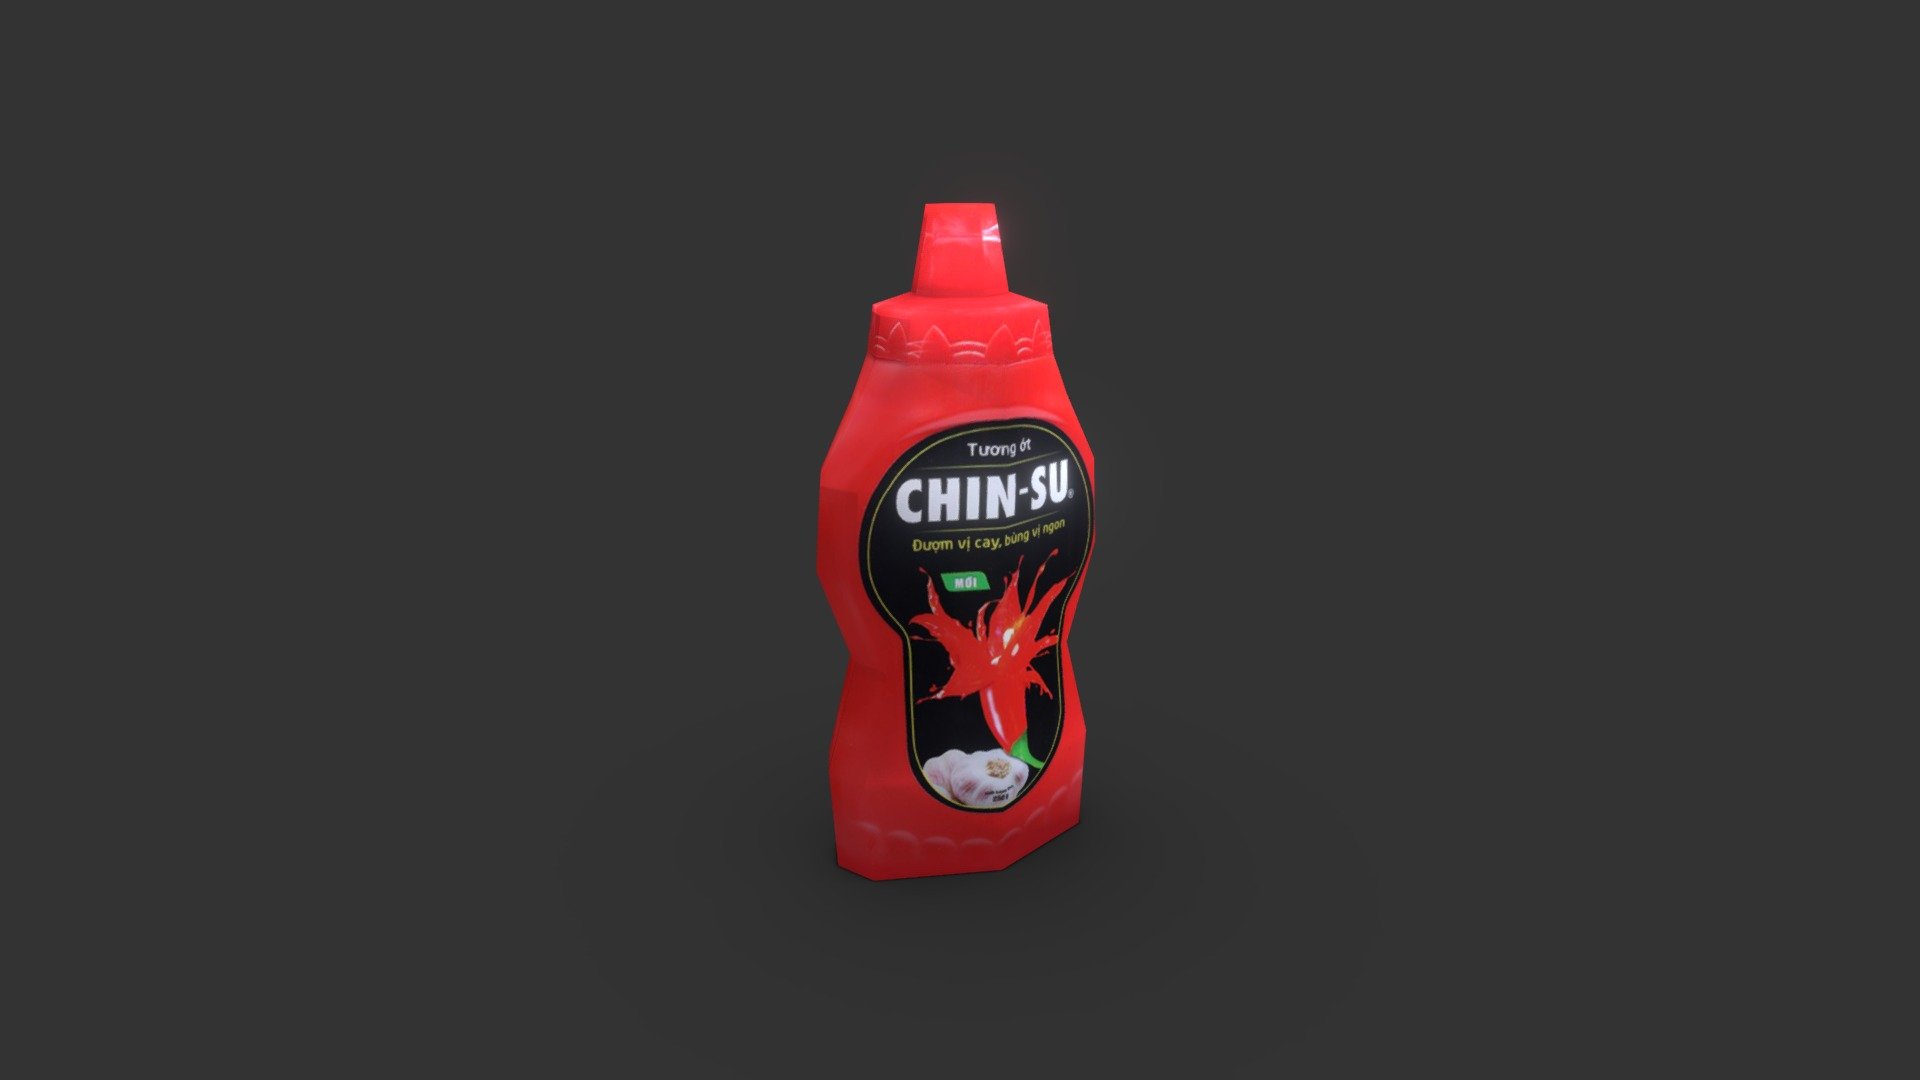 Tương ớt Chinsu - 3D model by VGDG (@tipforeveryone) 3d model